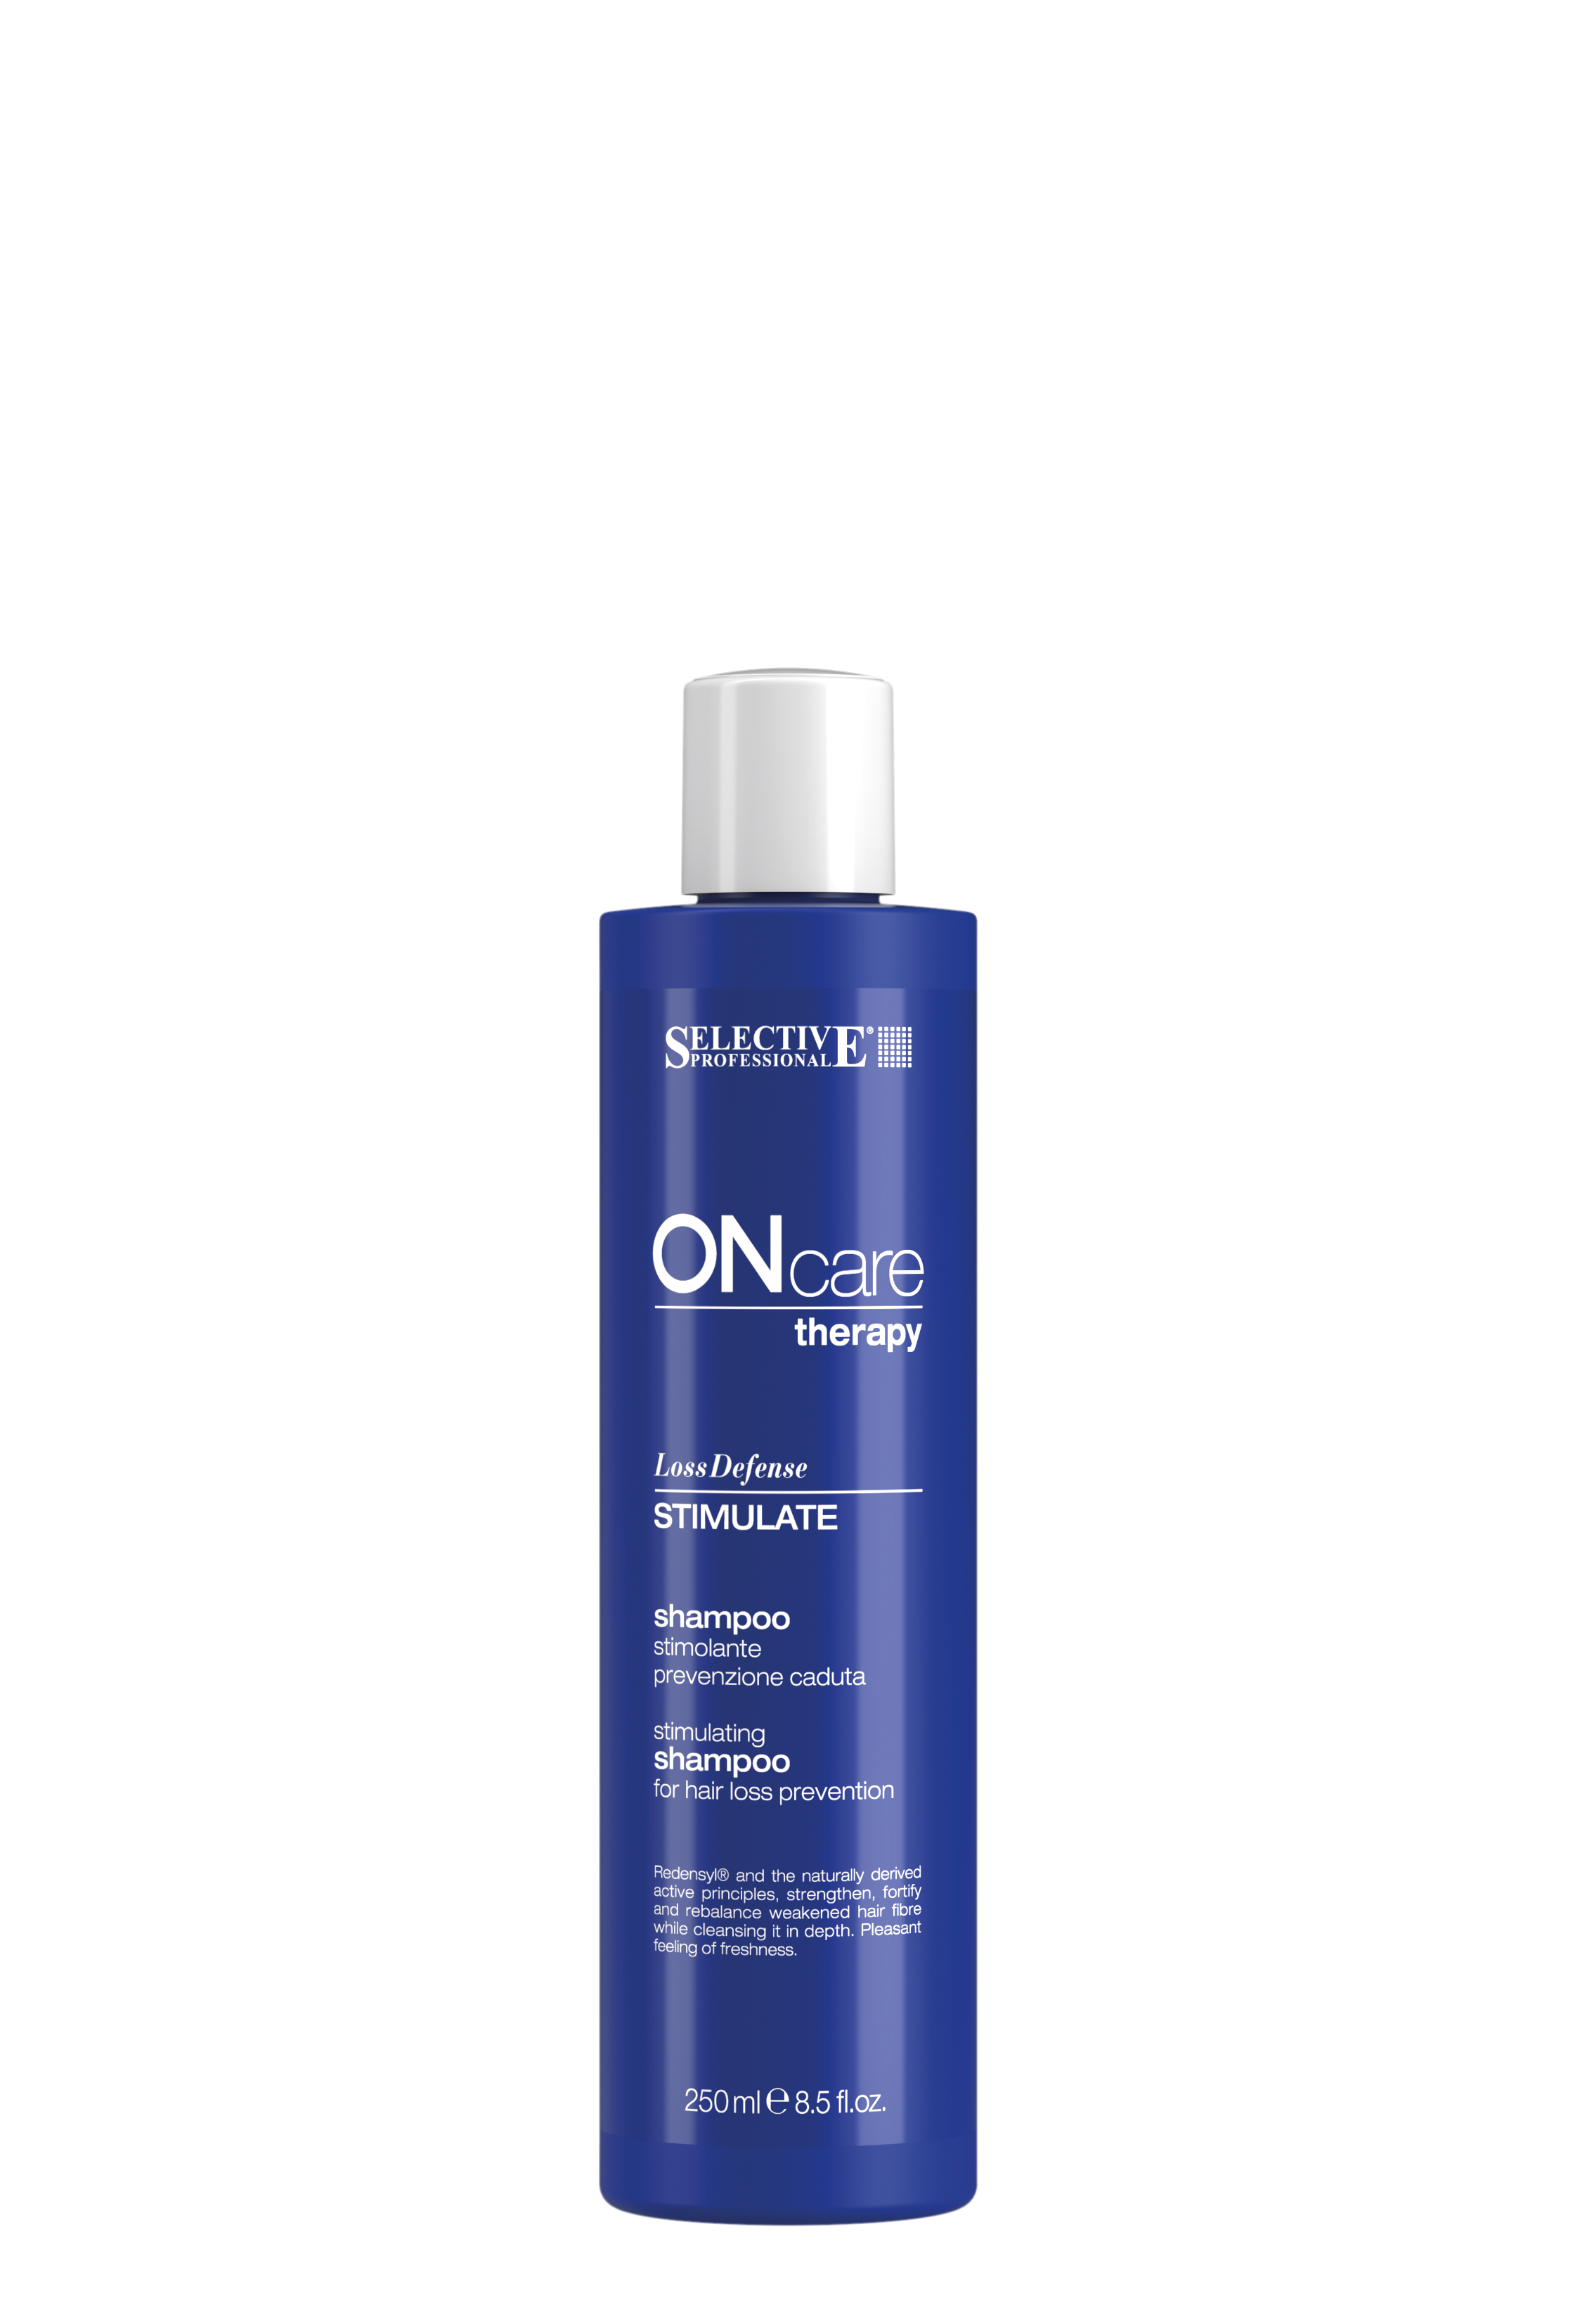 Шампуни для волос:  SELECTIVE PROFESSIONAL -  Стимулирующий шампунь, предотвращающий выпадение волос Stimulate Shampoo (250 мл)